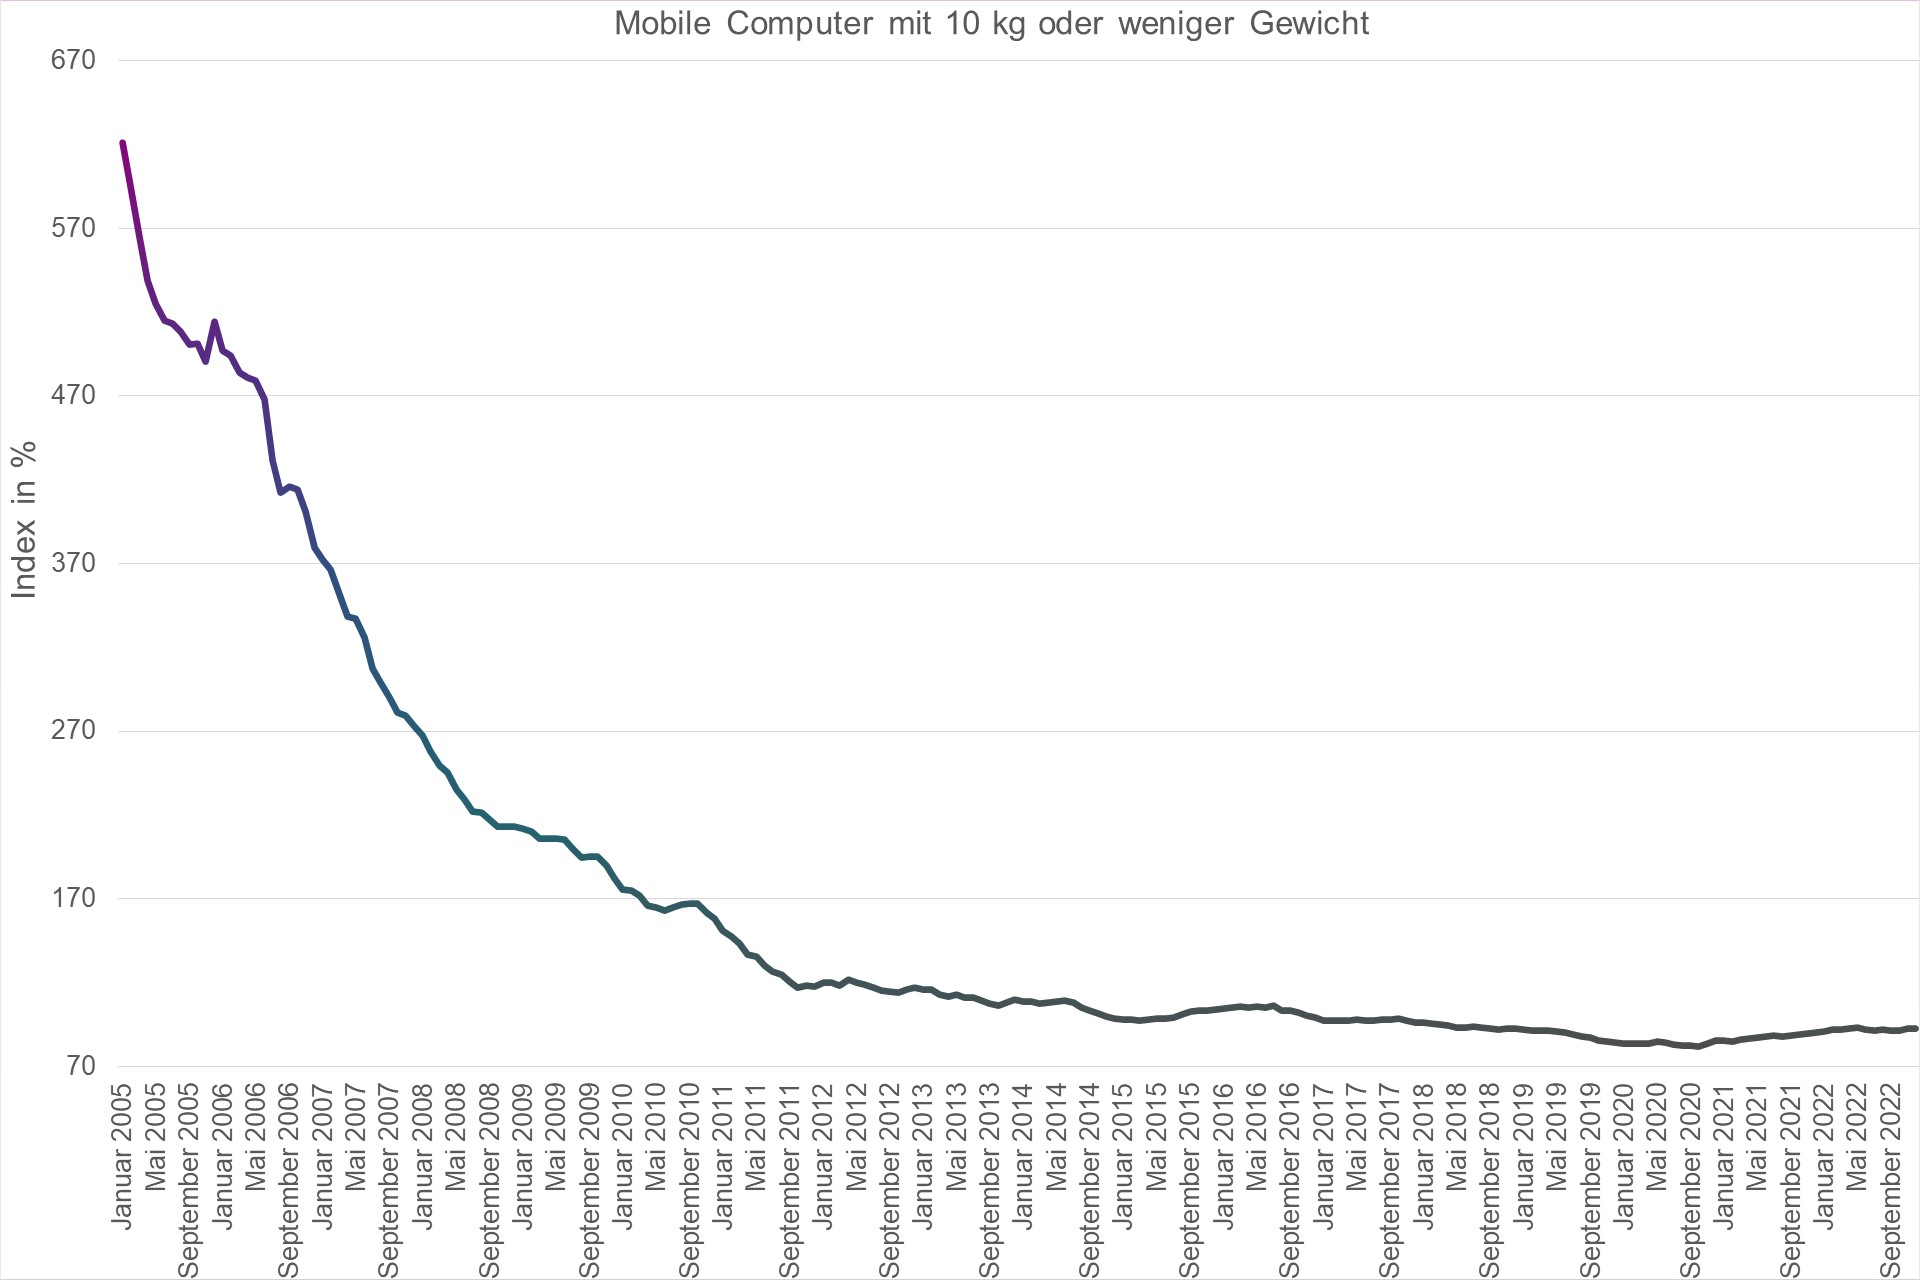 Grafik Preisindex Mobile Computer mit 10 kg oder weniger Gewicht